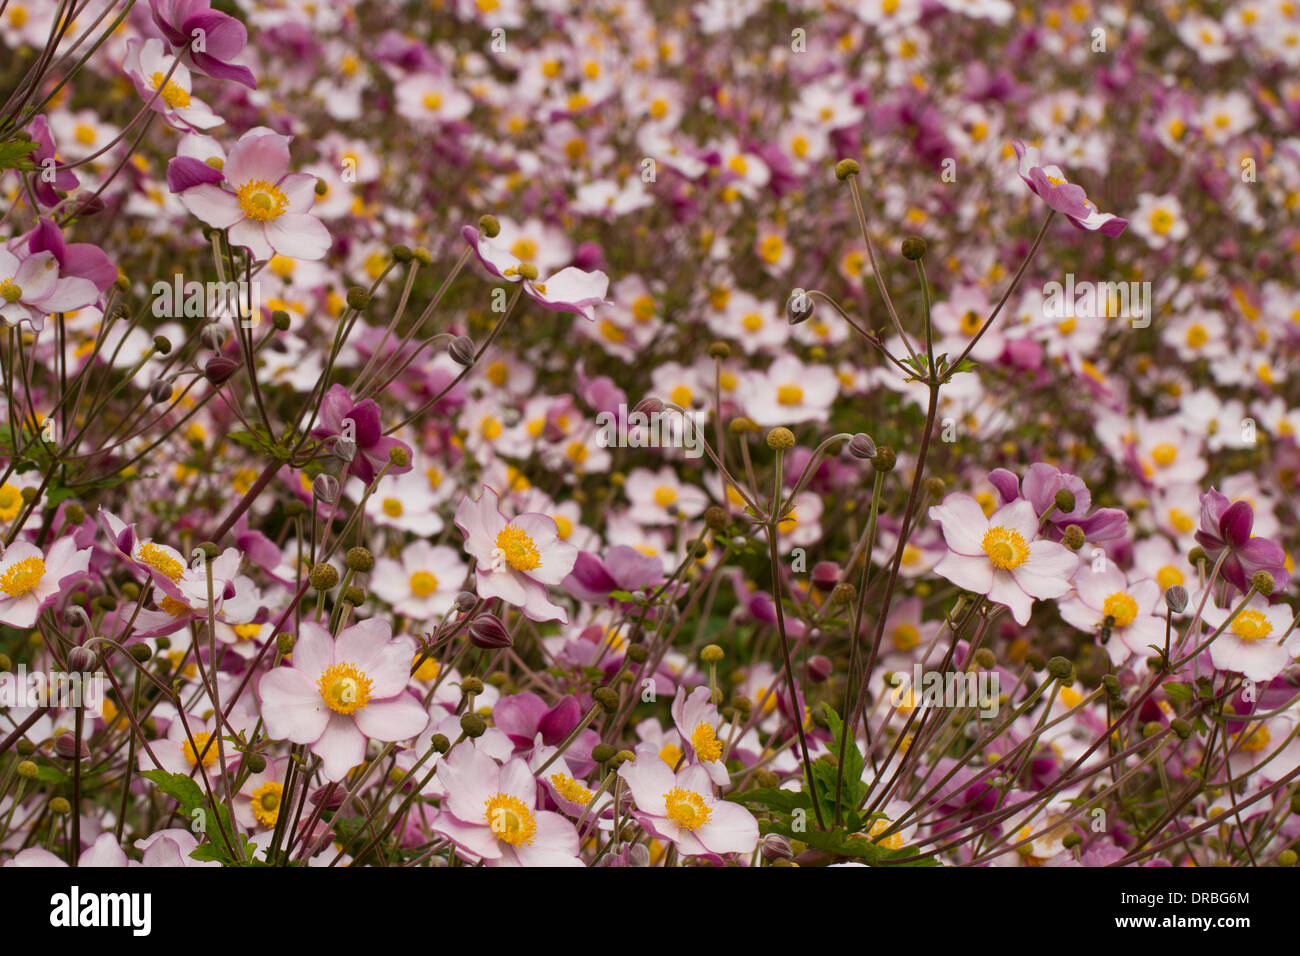 Anémone du Japon (Anemone x hybrida) 'Septembre' Charme floraison dans un jardin. Carmarthenshire, Pays de Galles. Septembre. Banque D'Images